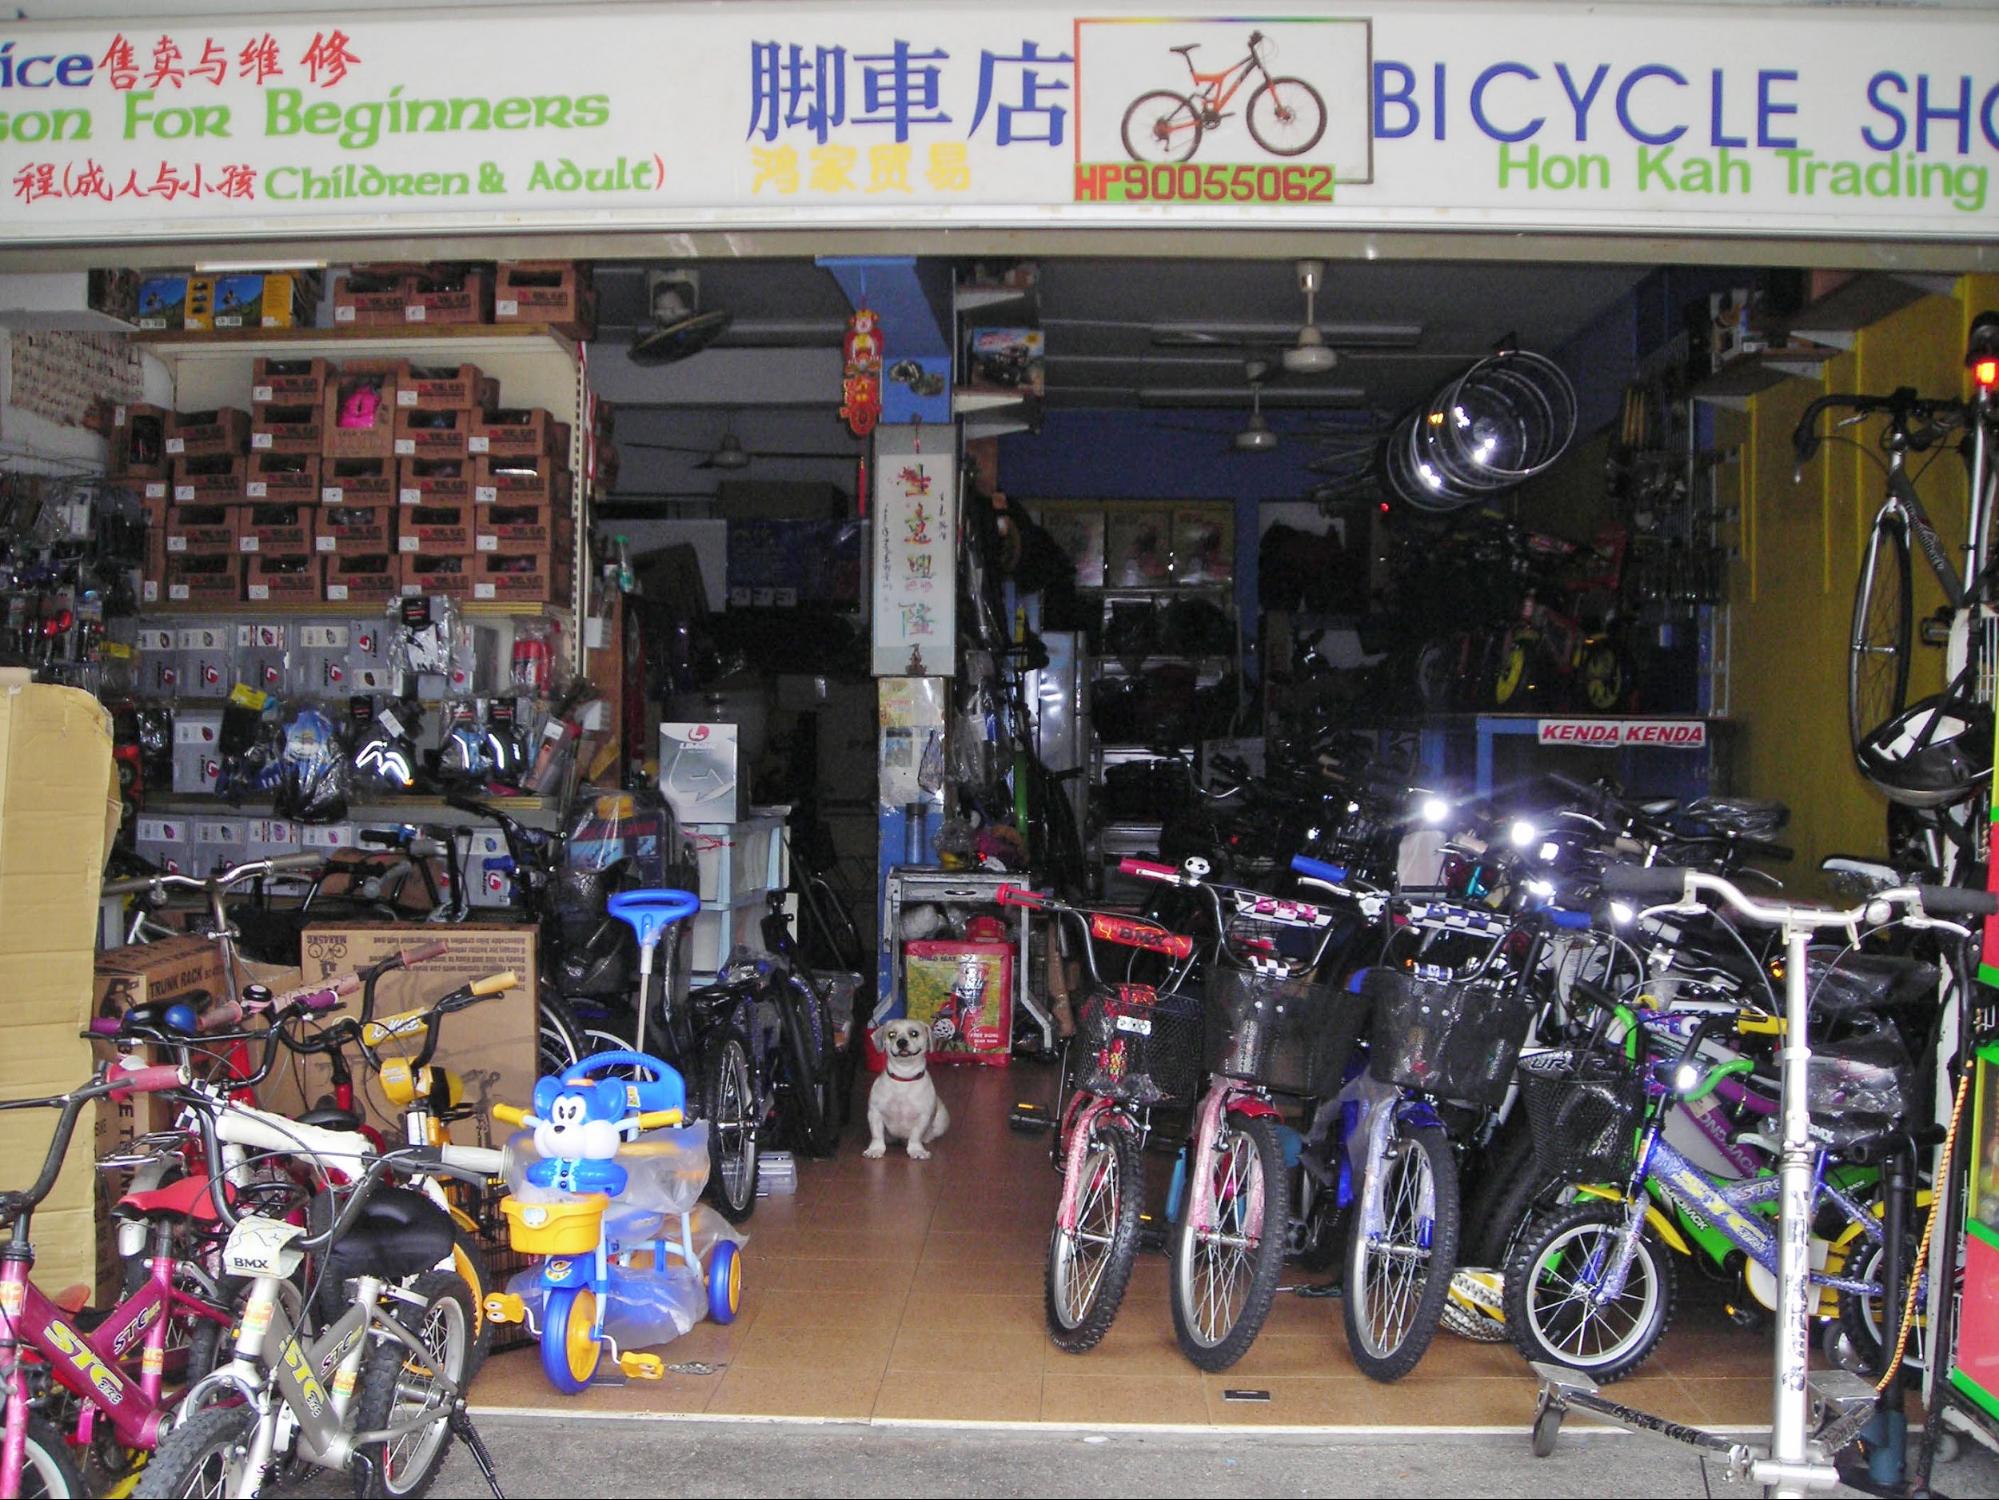 the nearest bike shop to me